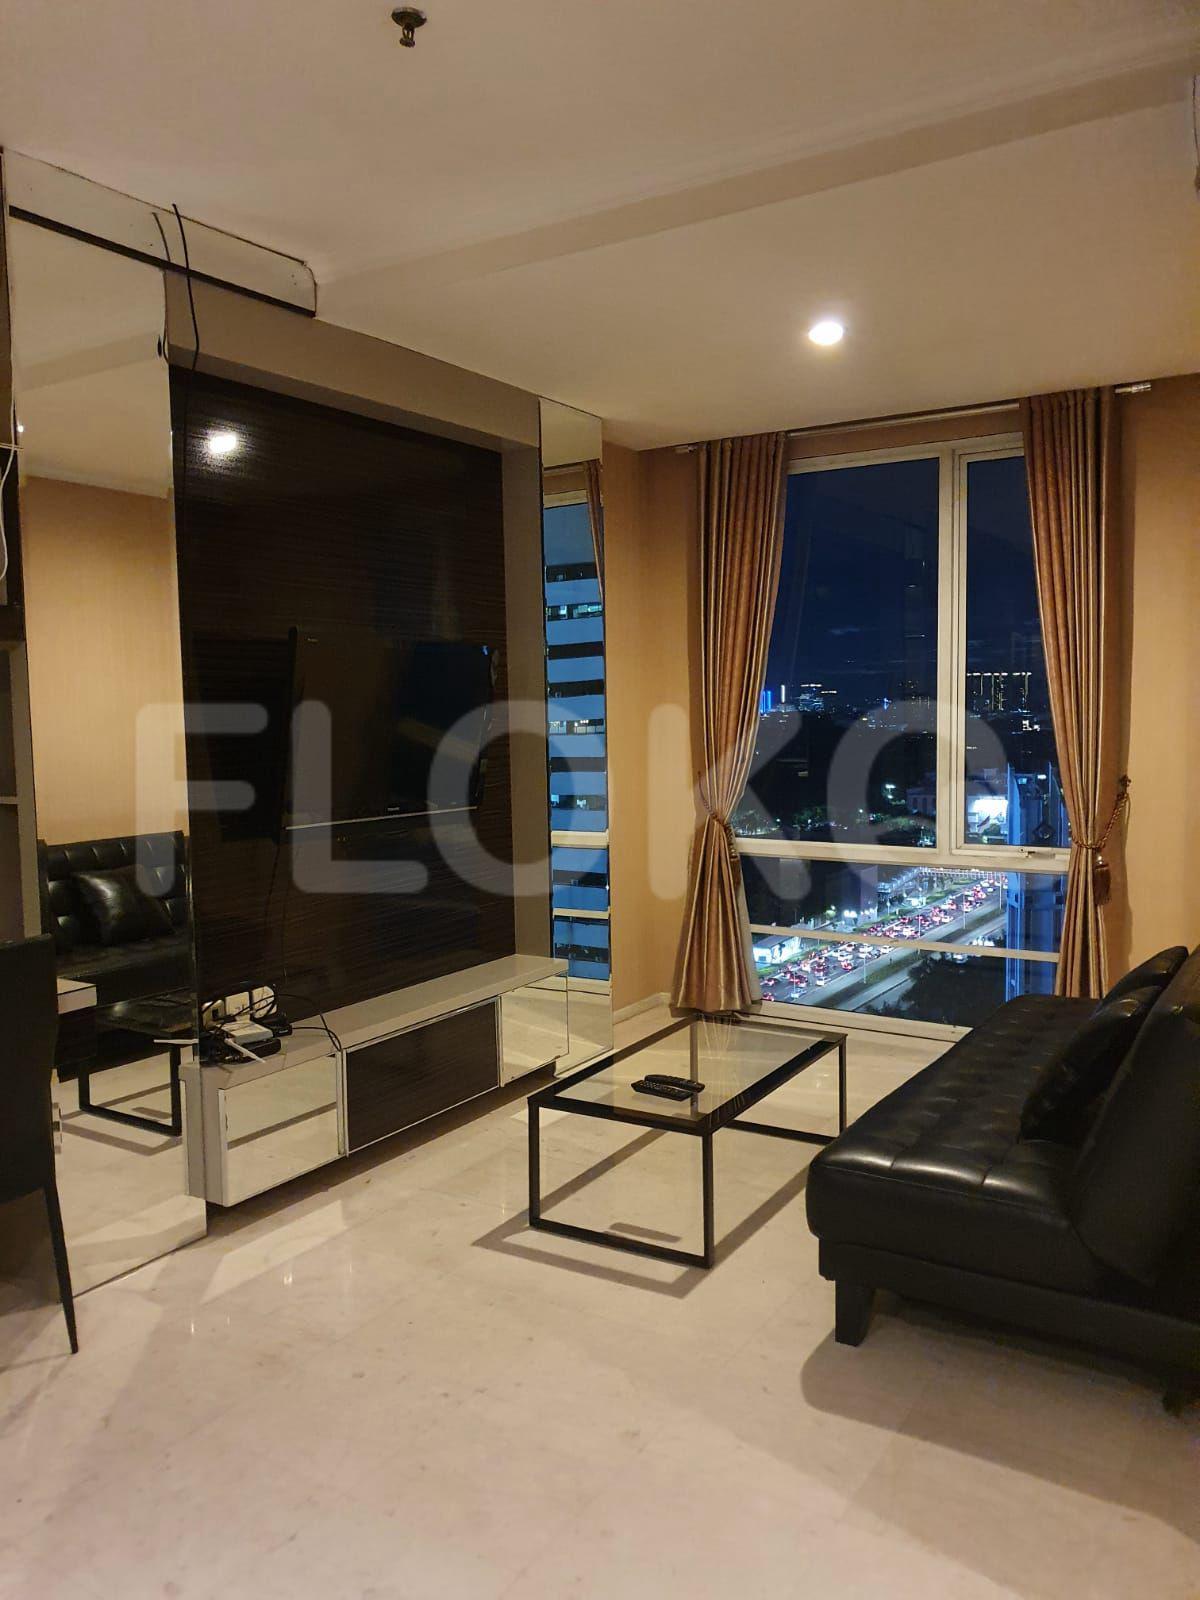 2 Bedroom on 17th Floor fsua51 for Rent in FX Residence